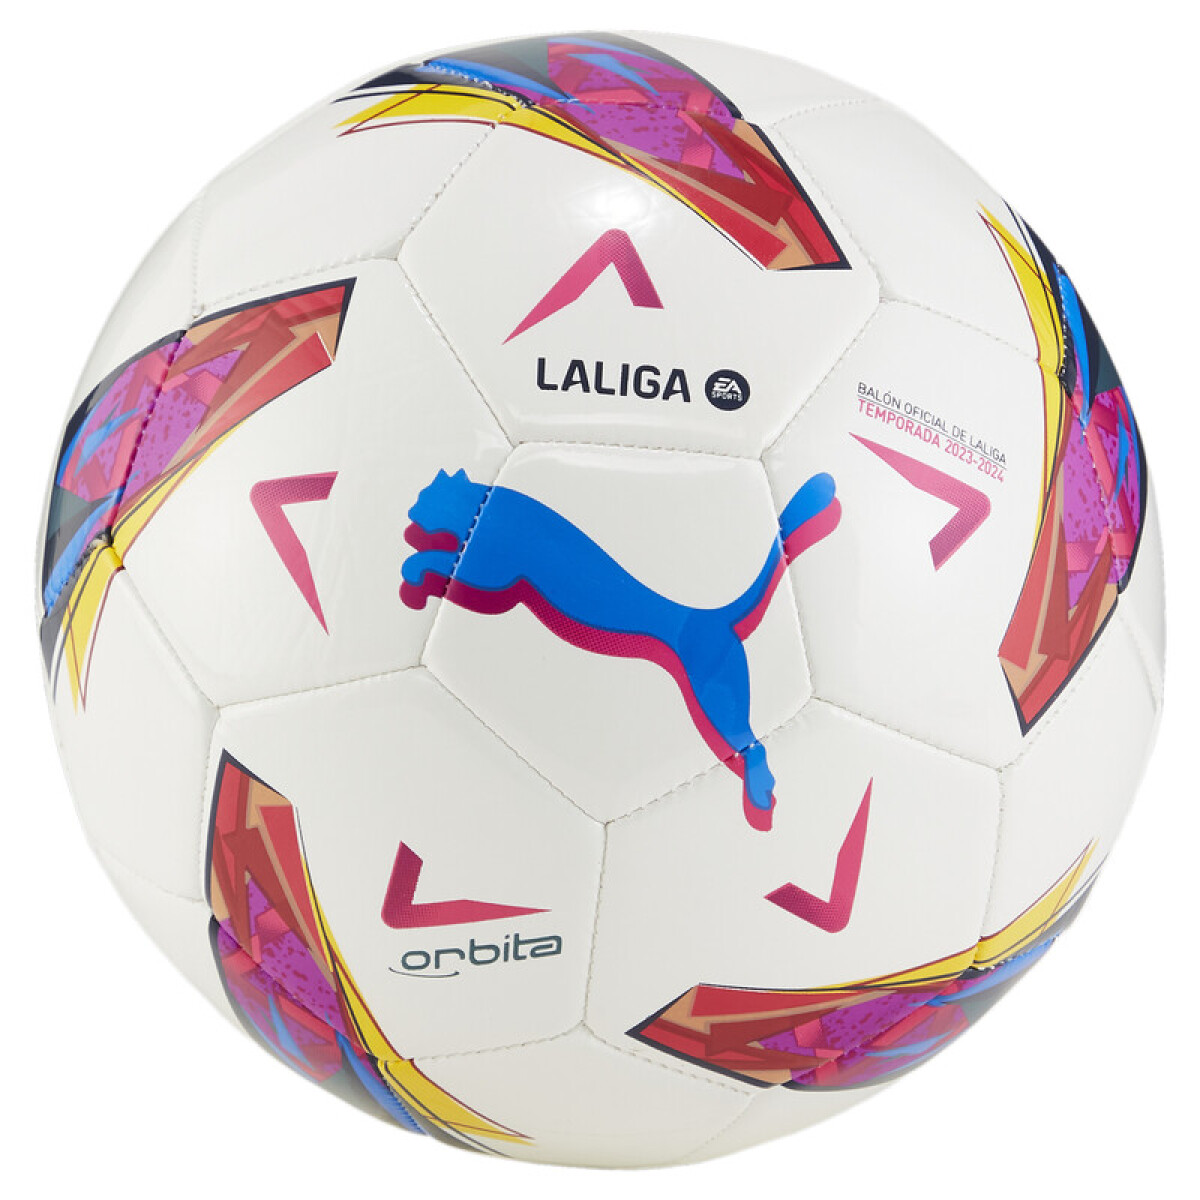 Orbita La Liga ball 08410901 - Blanco/mulitcolor 